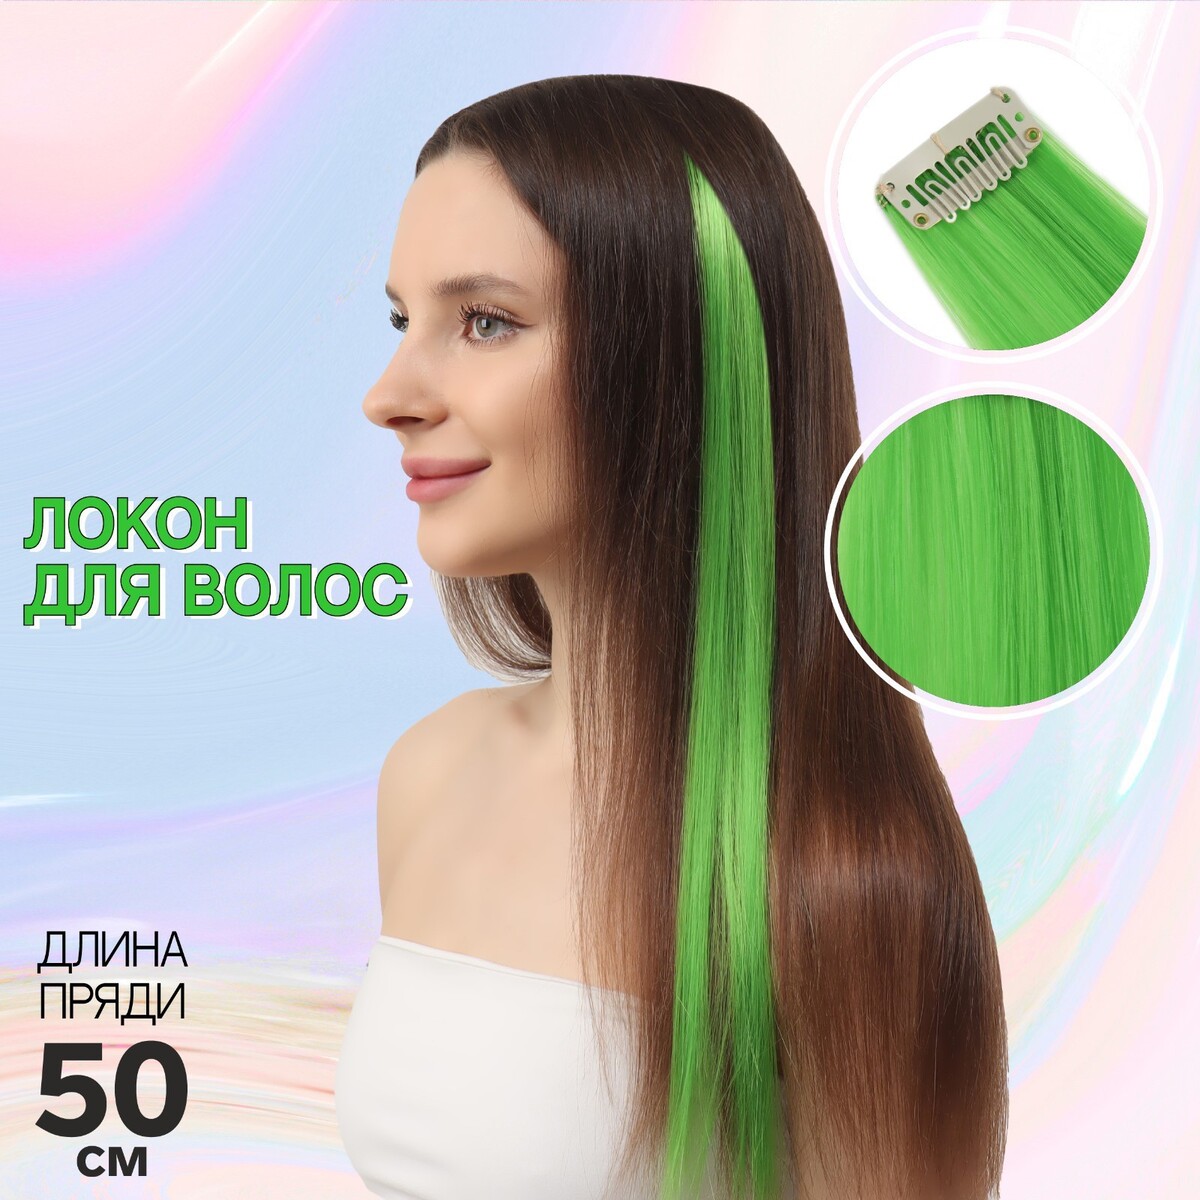 Локон накладной, прямой волос, на заколке, 50 см, 5 гр, цвет зеленый локон накладной бантик прямой волос на заколке 32 см микс